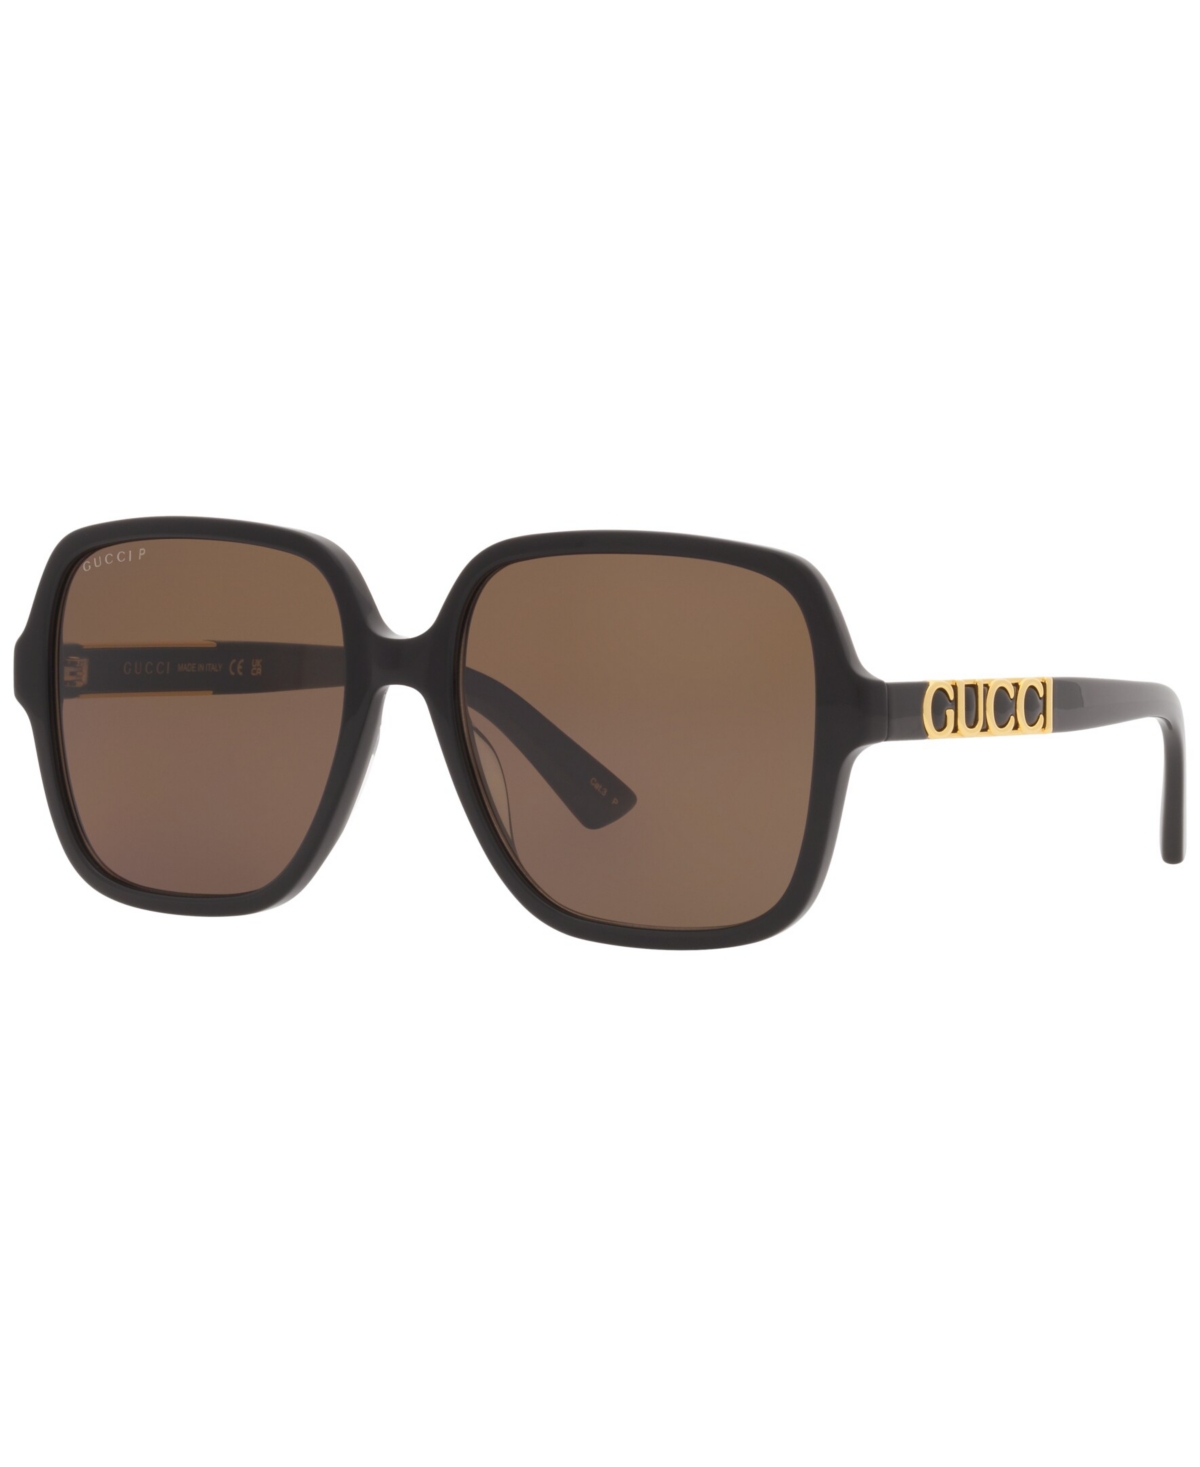 Gucci Unisex Polarized Sunglasses, Gg1189s In Silver-tone